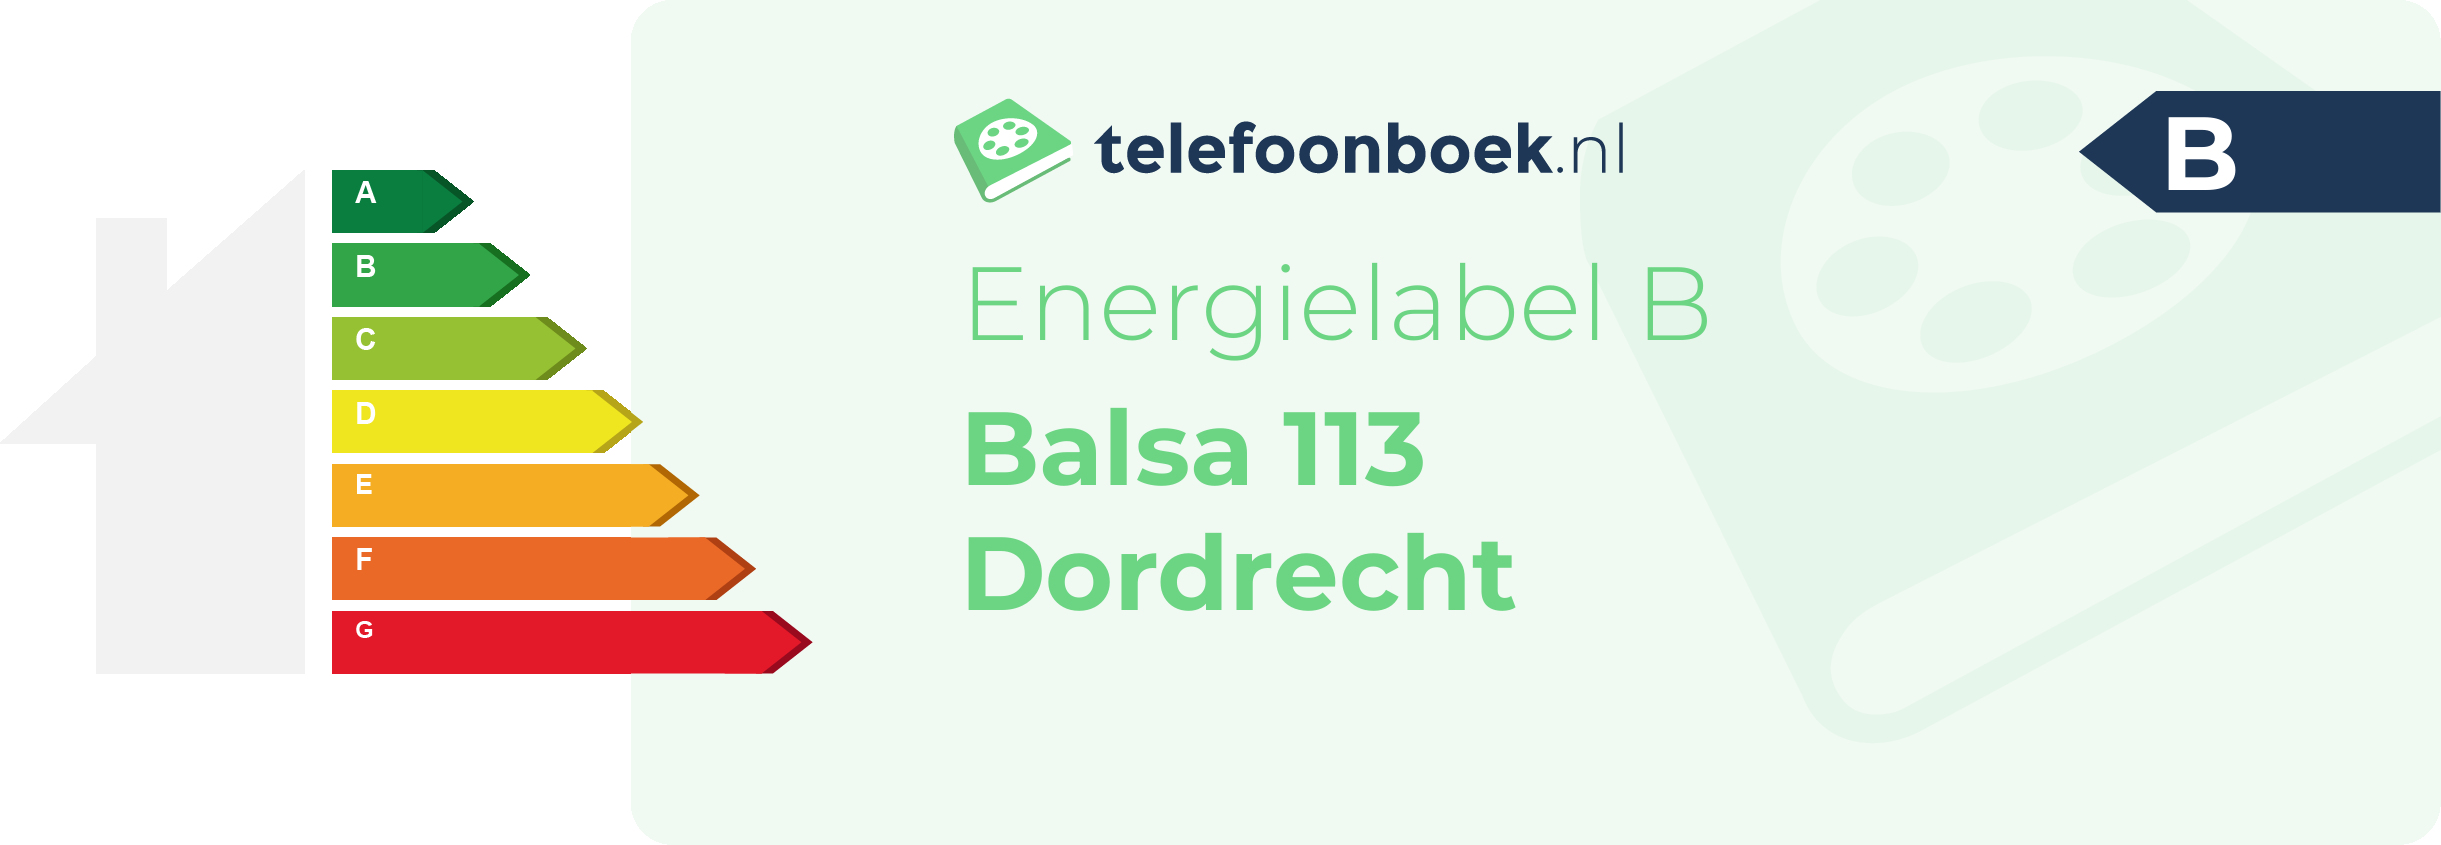 Energielabel Balsa 113 Dordrecht